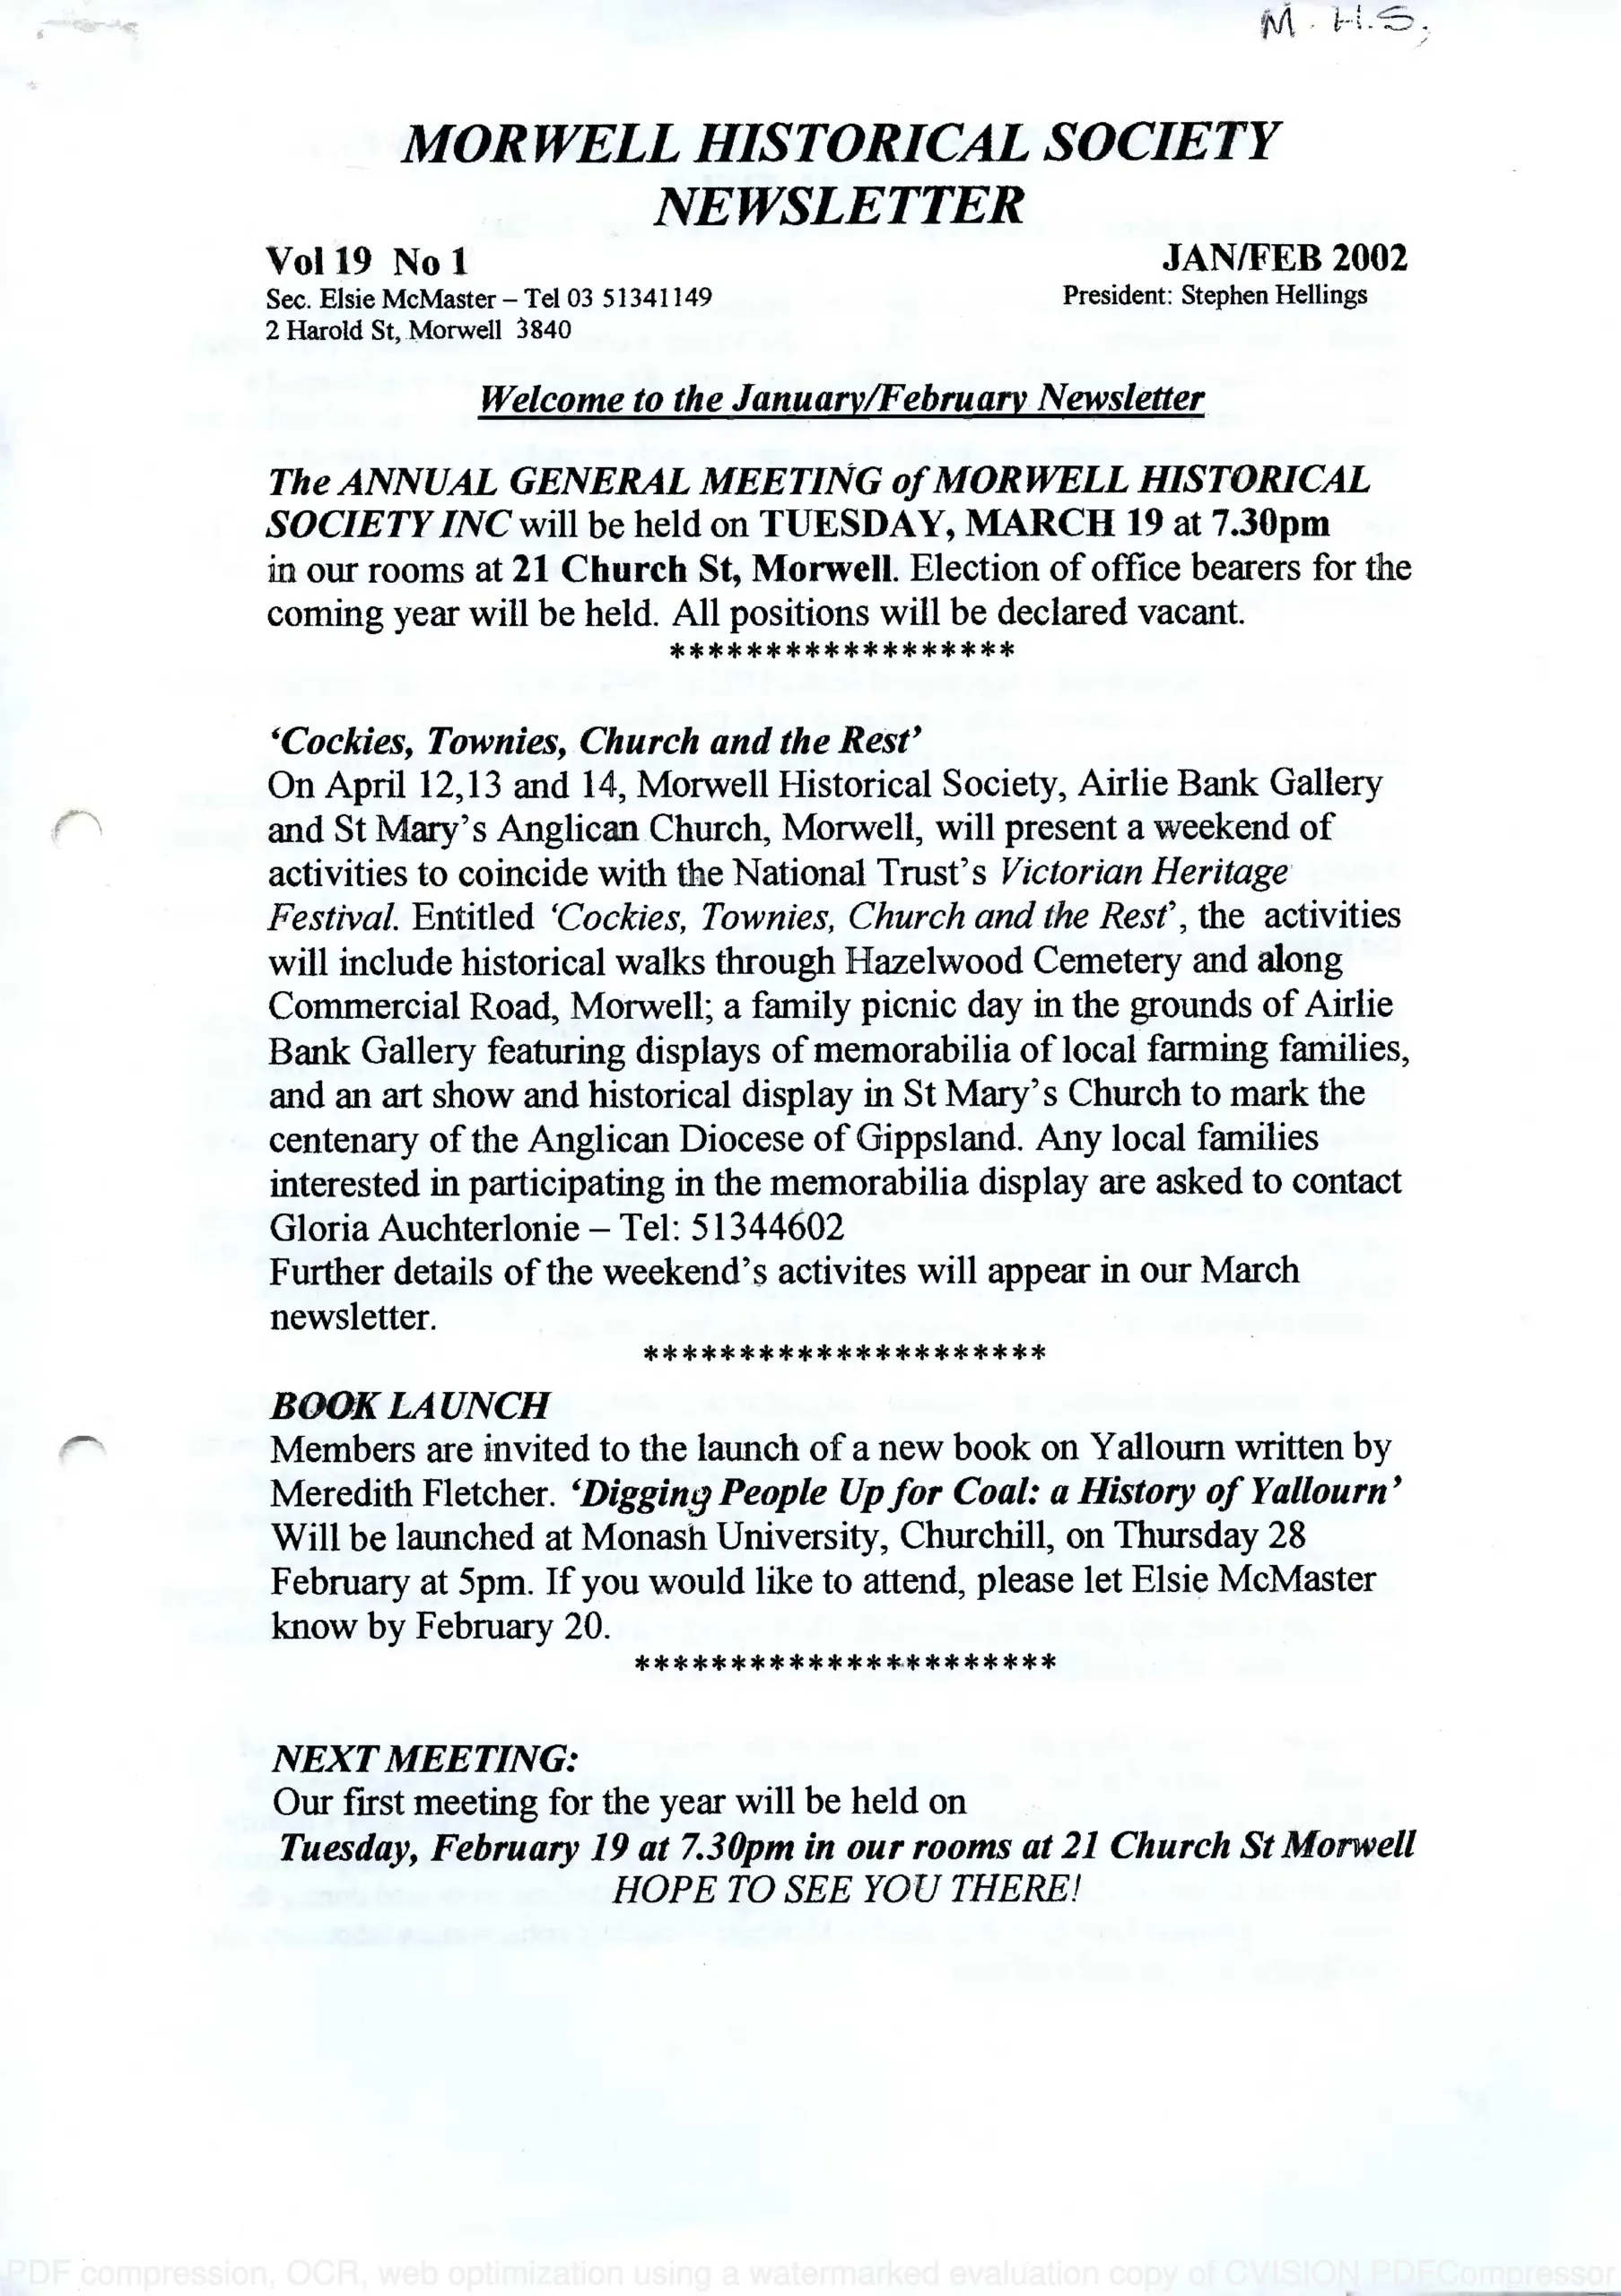 Newsletter January & February 2002